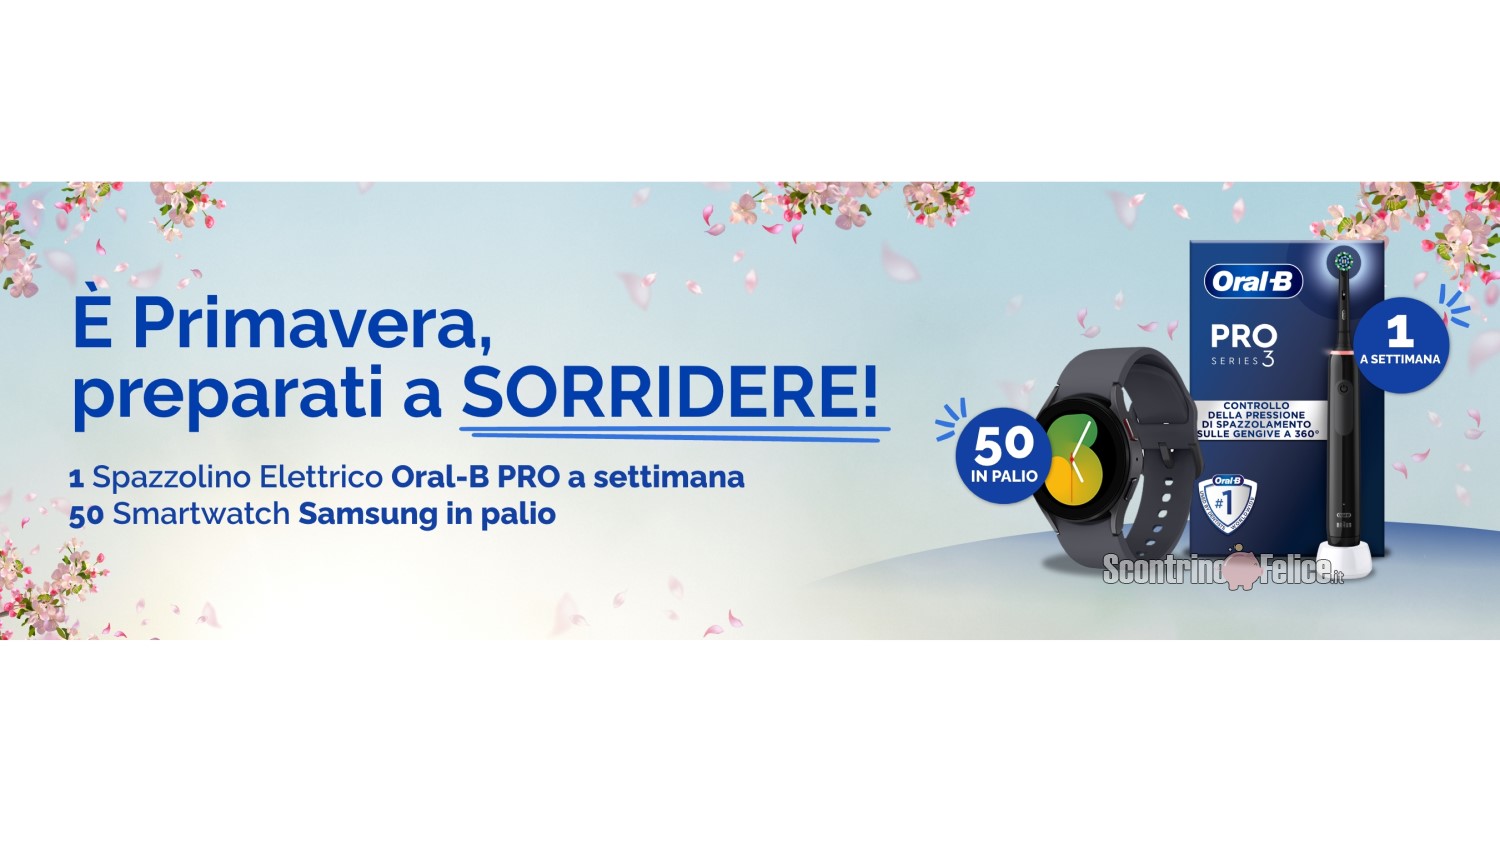 Concorso gratuito "Sorridi è Primavera": vinci Oral B e smartwatch Samsung